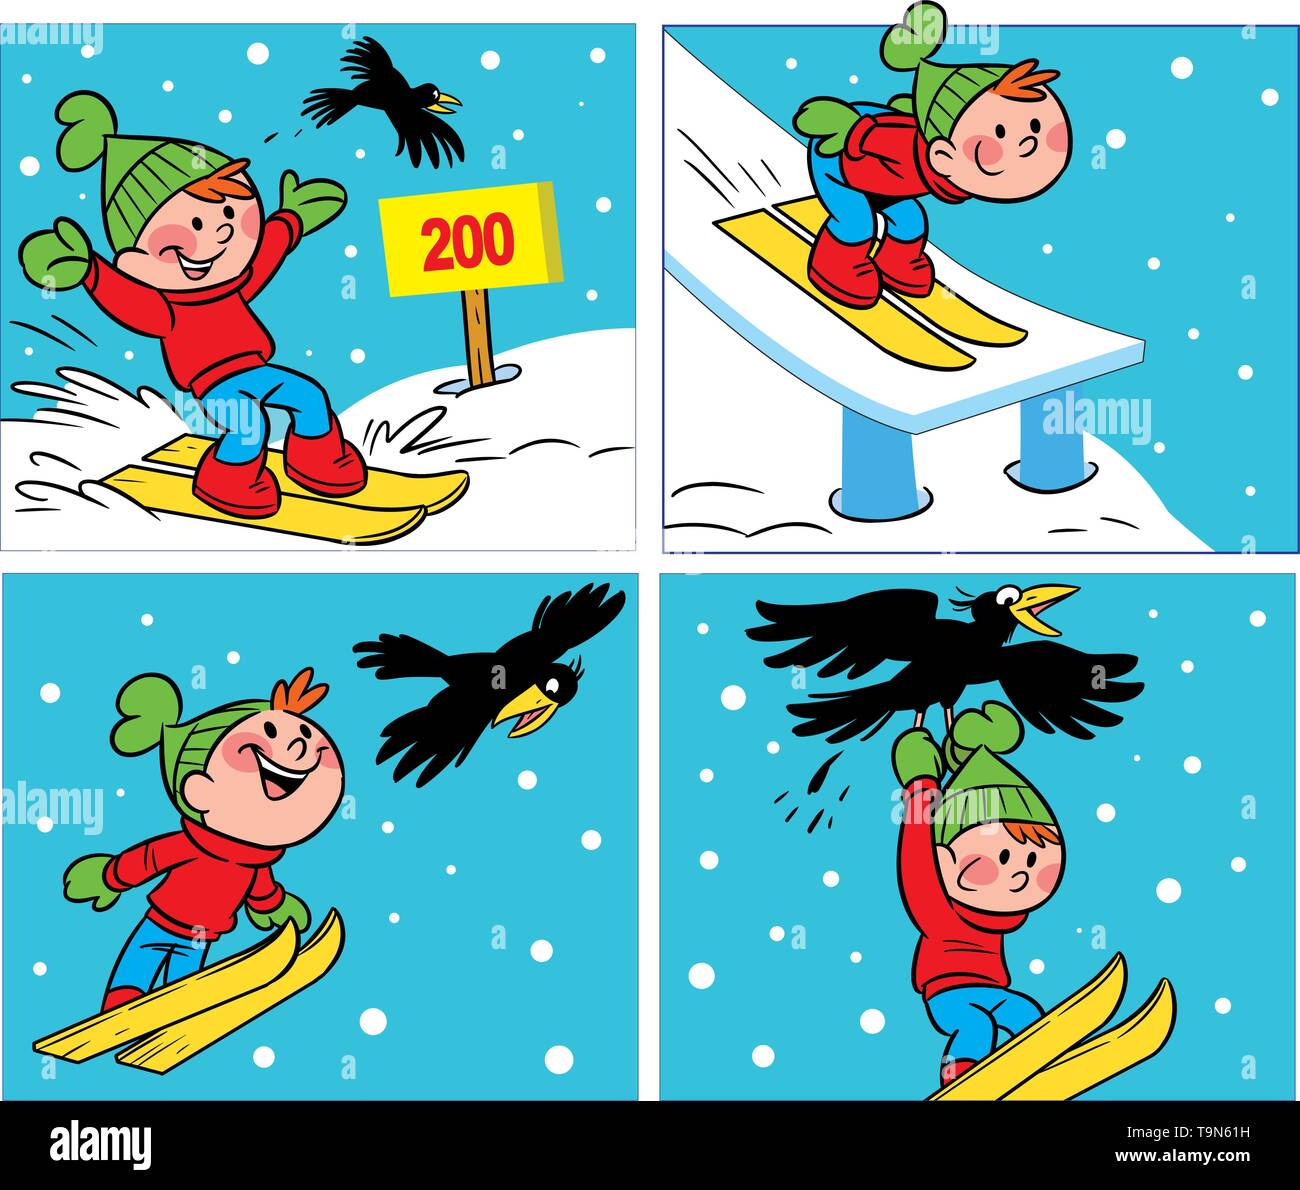 Illustrazione Vettoriale cartoon comico con un ragazzo di sci e un corvo, nella stagione invernale. Illustrazione Vettoriale